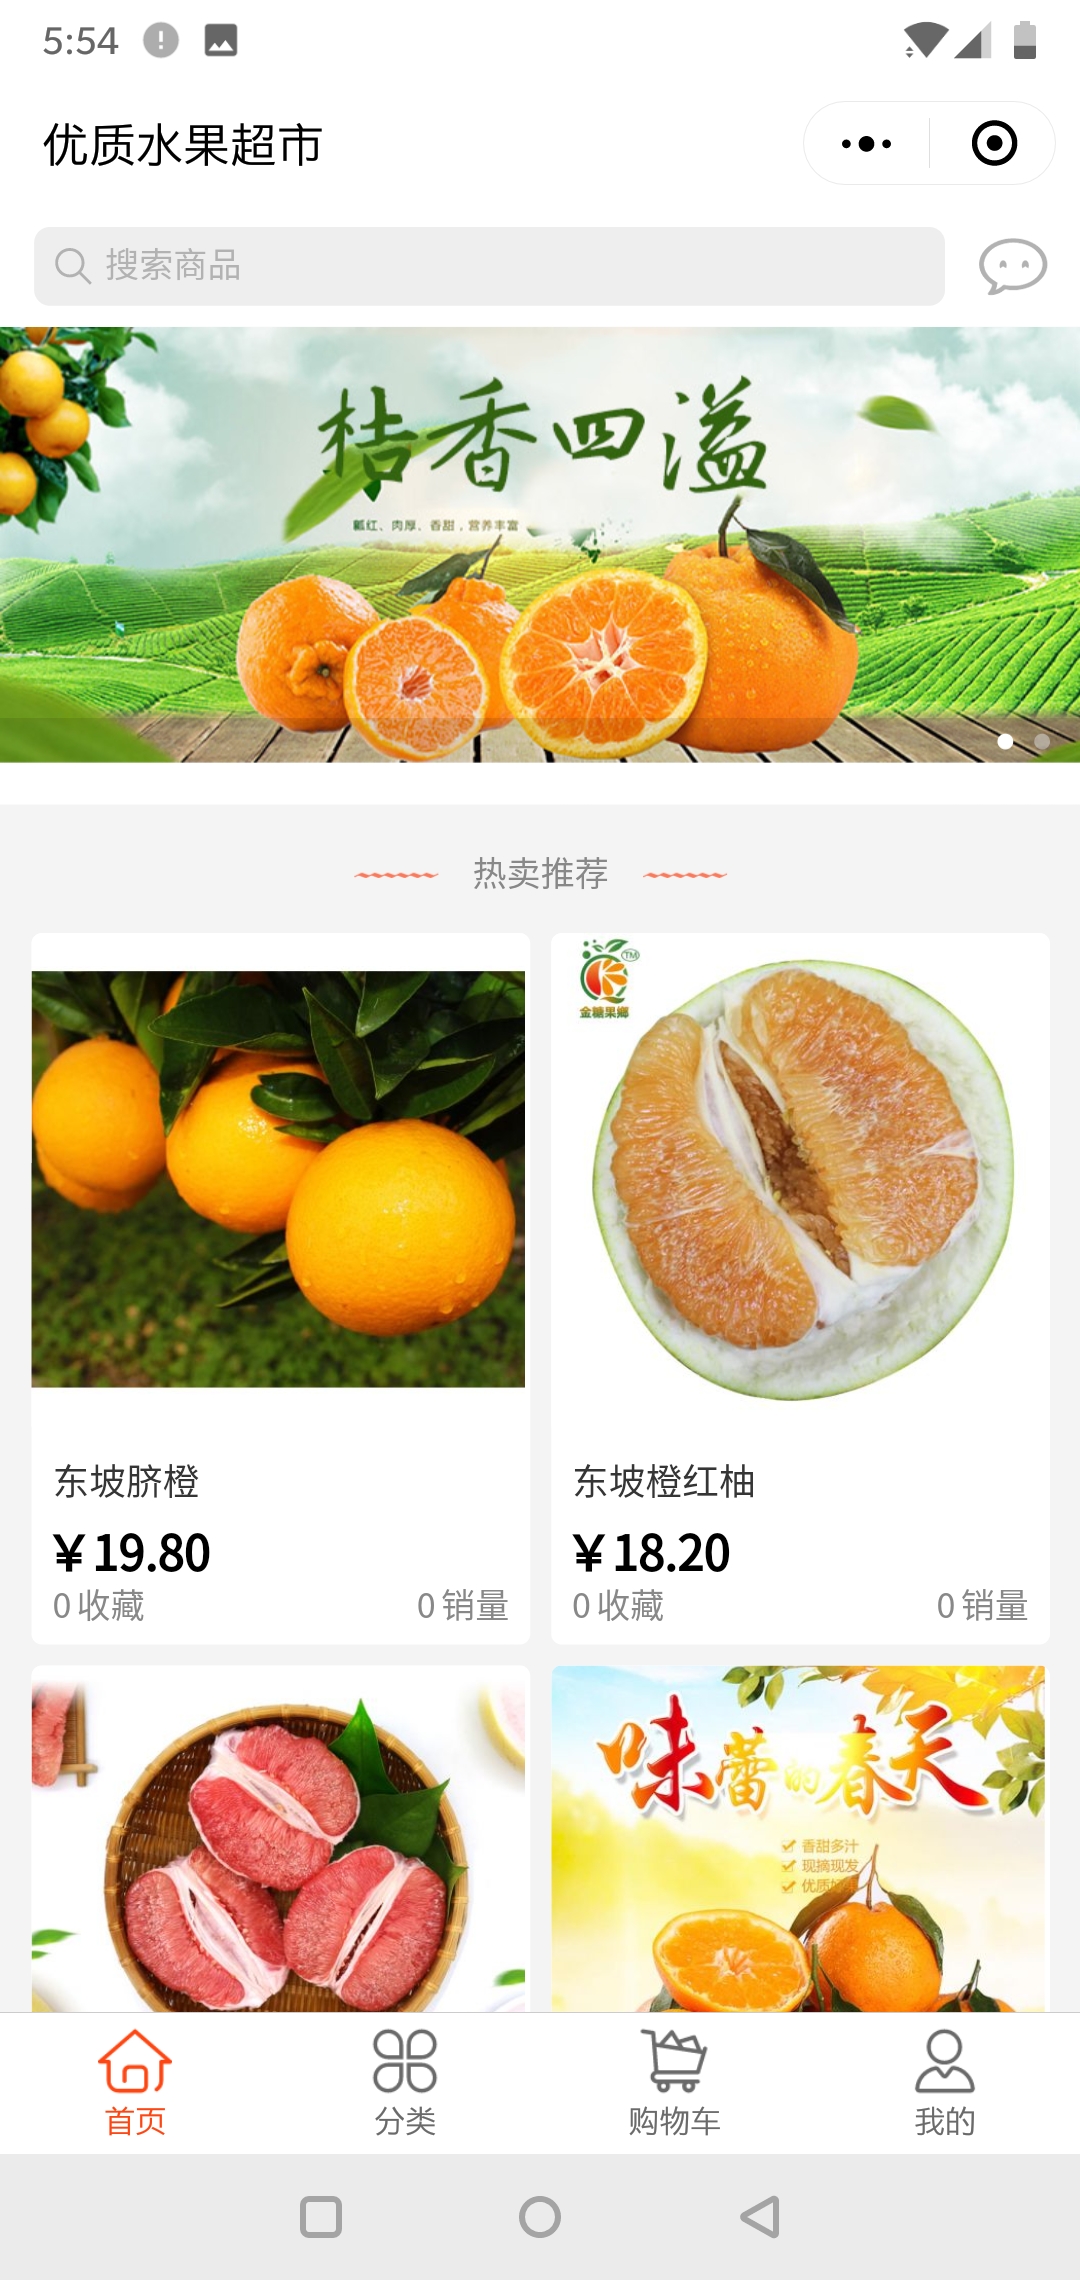 果蔬橙色成都-优质水果超市商城小程序高级版.jpg